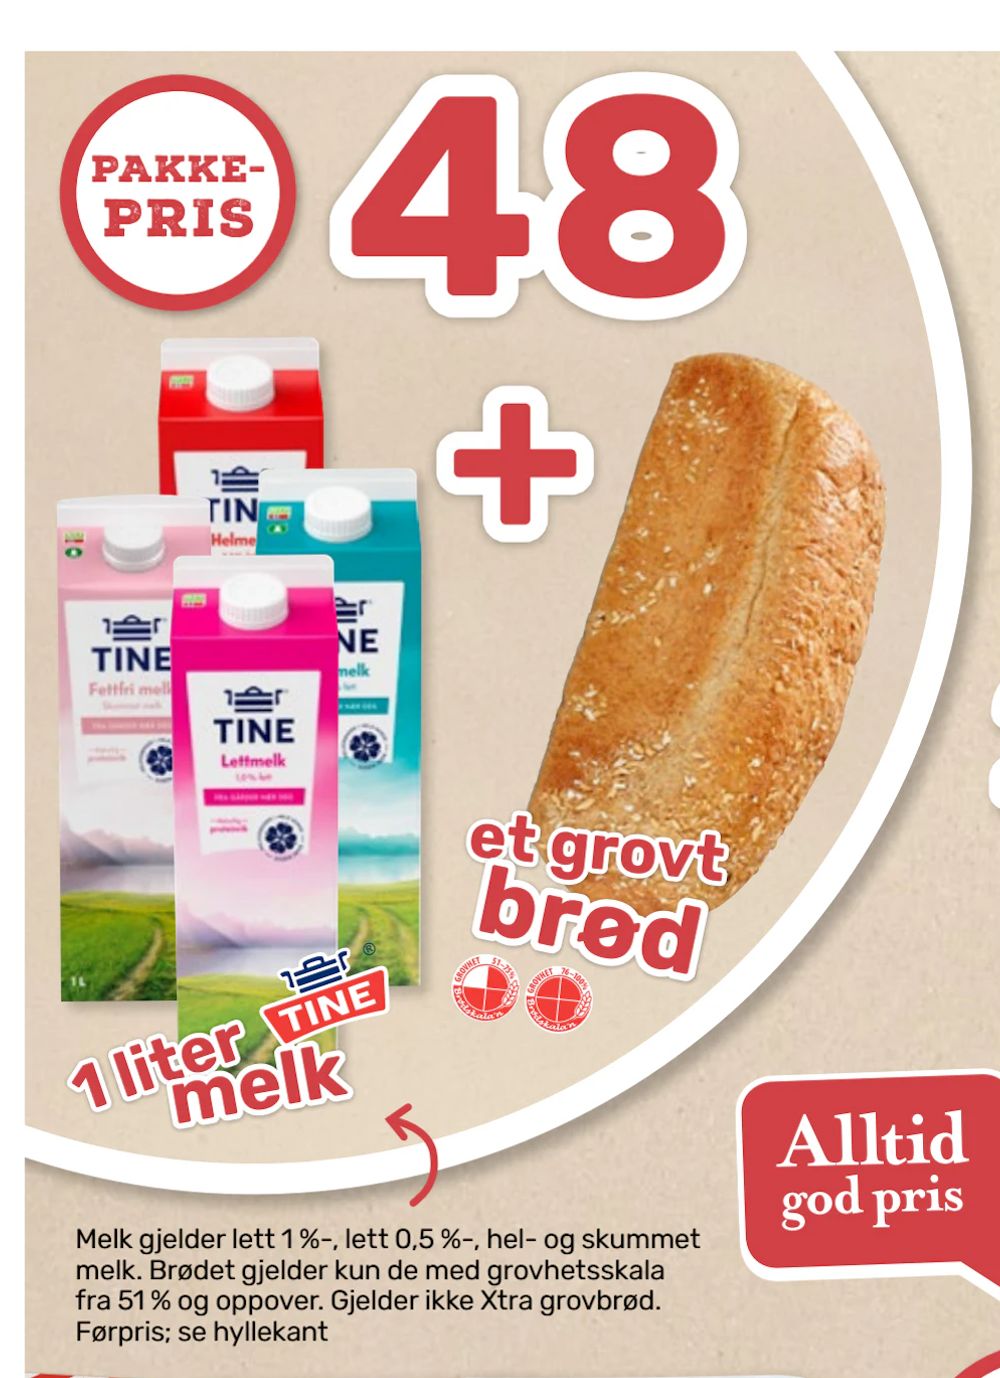 Tilbud på 1 liter Tine melk + et grovt brød fra Matkroken til 48 kr